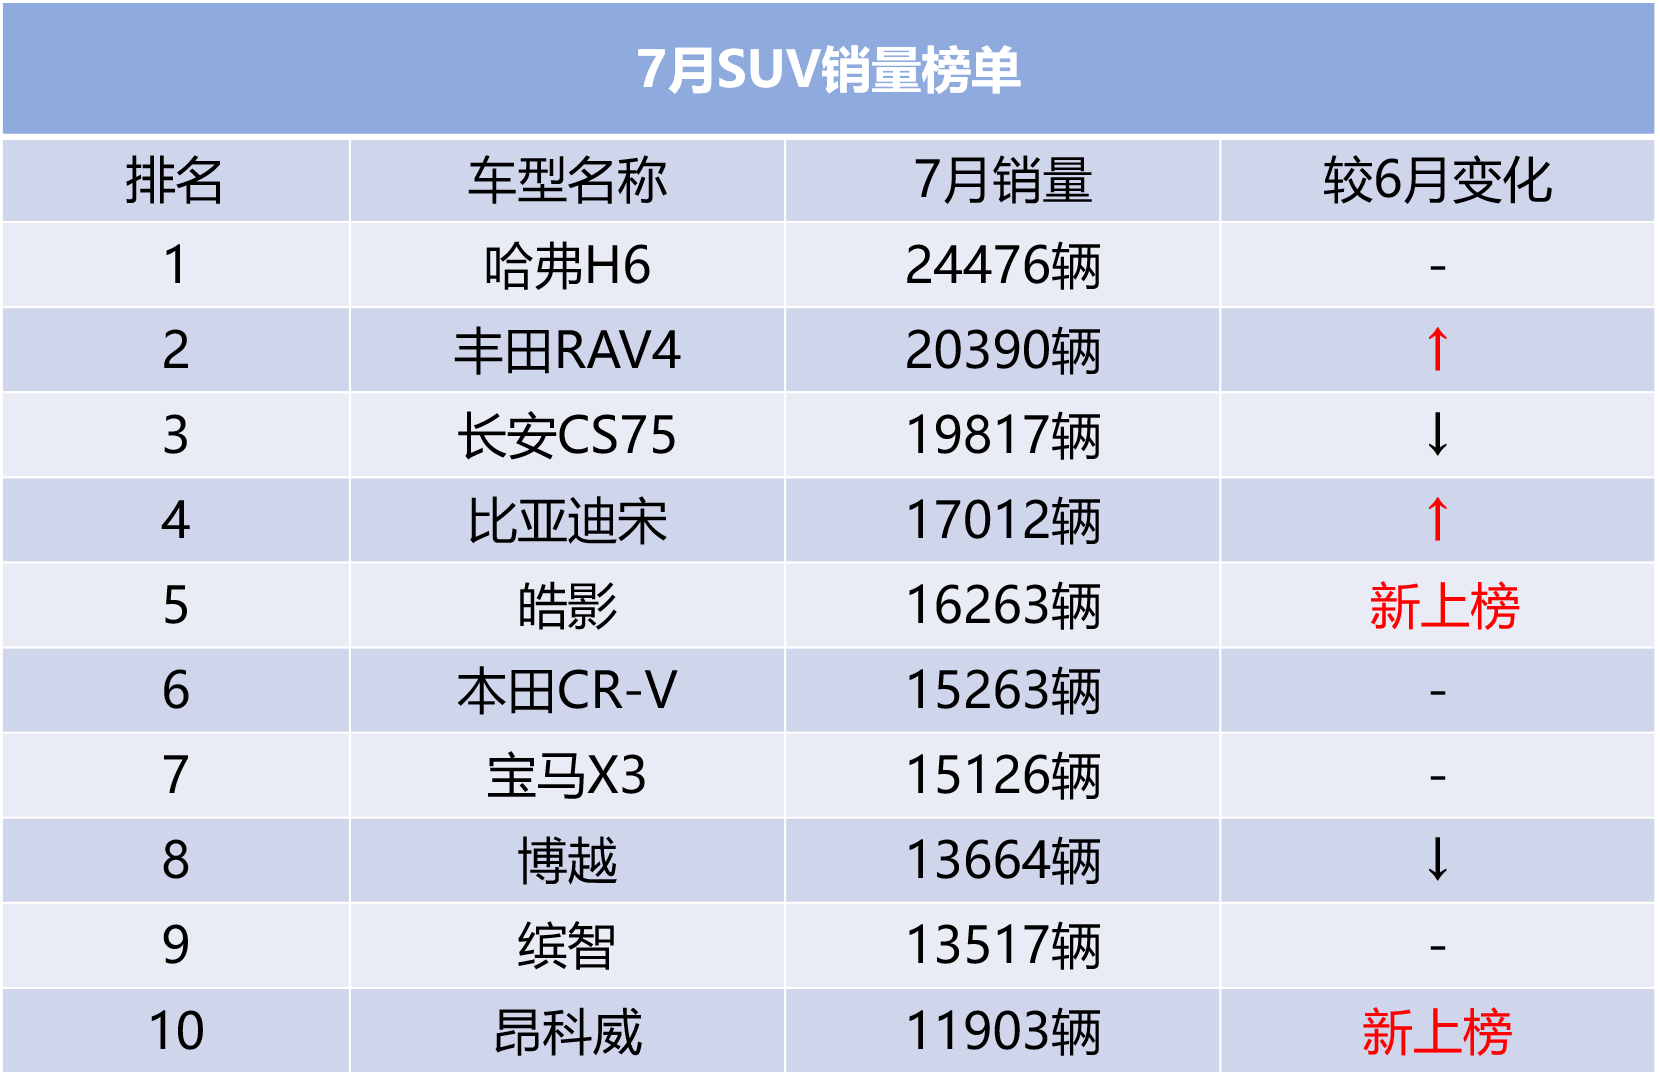 7月suv销量点评 rav4荣放逆袭第二,皓影/昂科威成功上榜